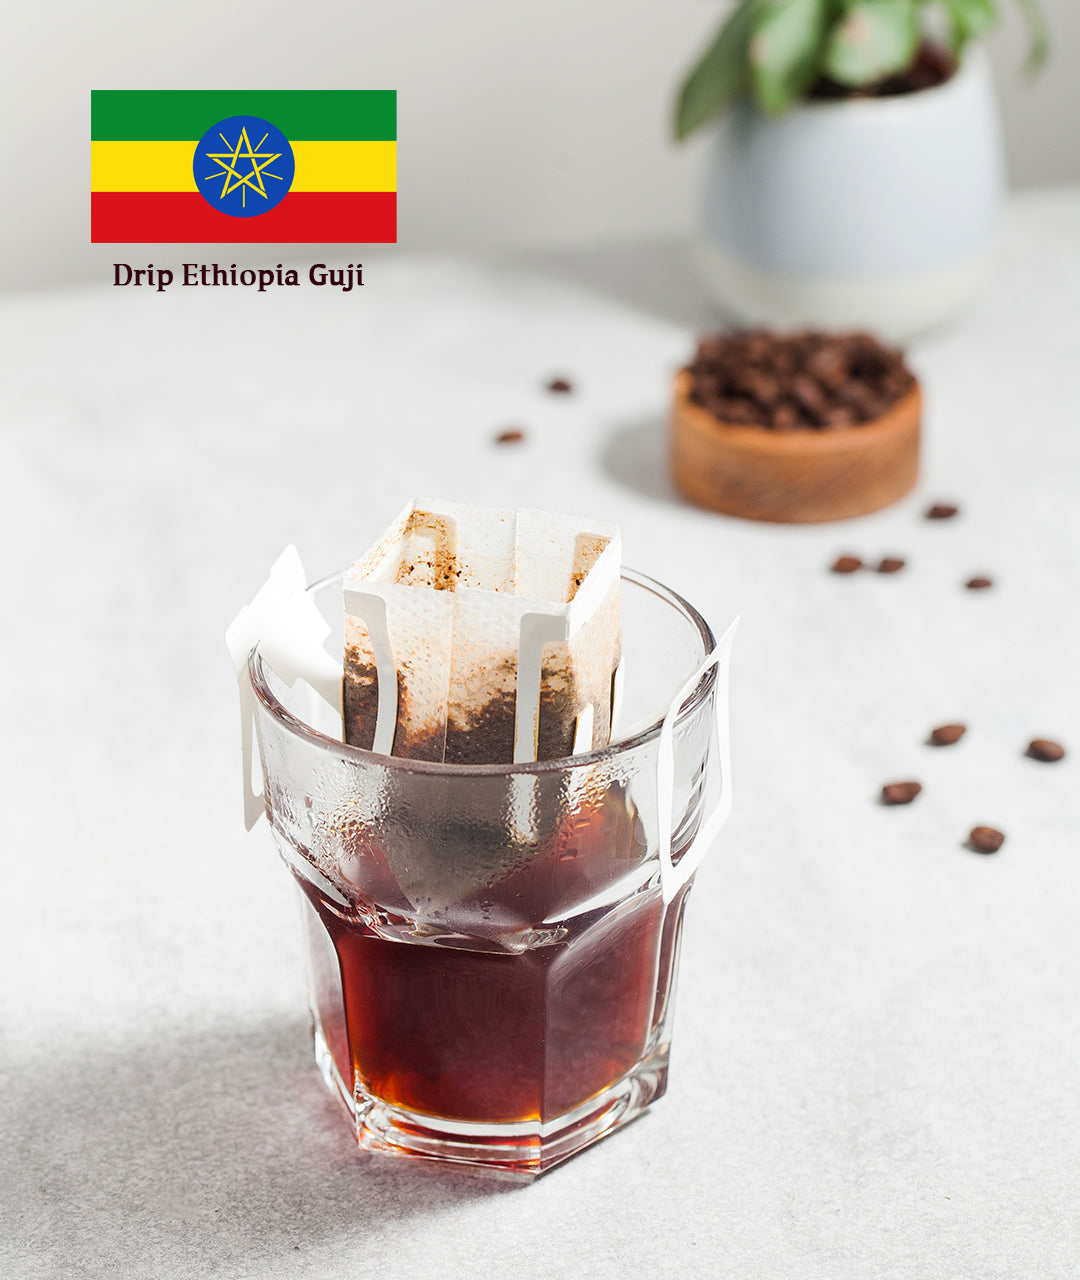 قهوه اثيوبيا قوجي مقطره - Bull's Roastery